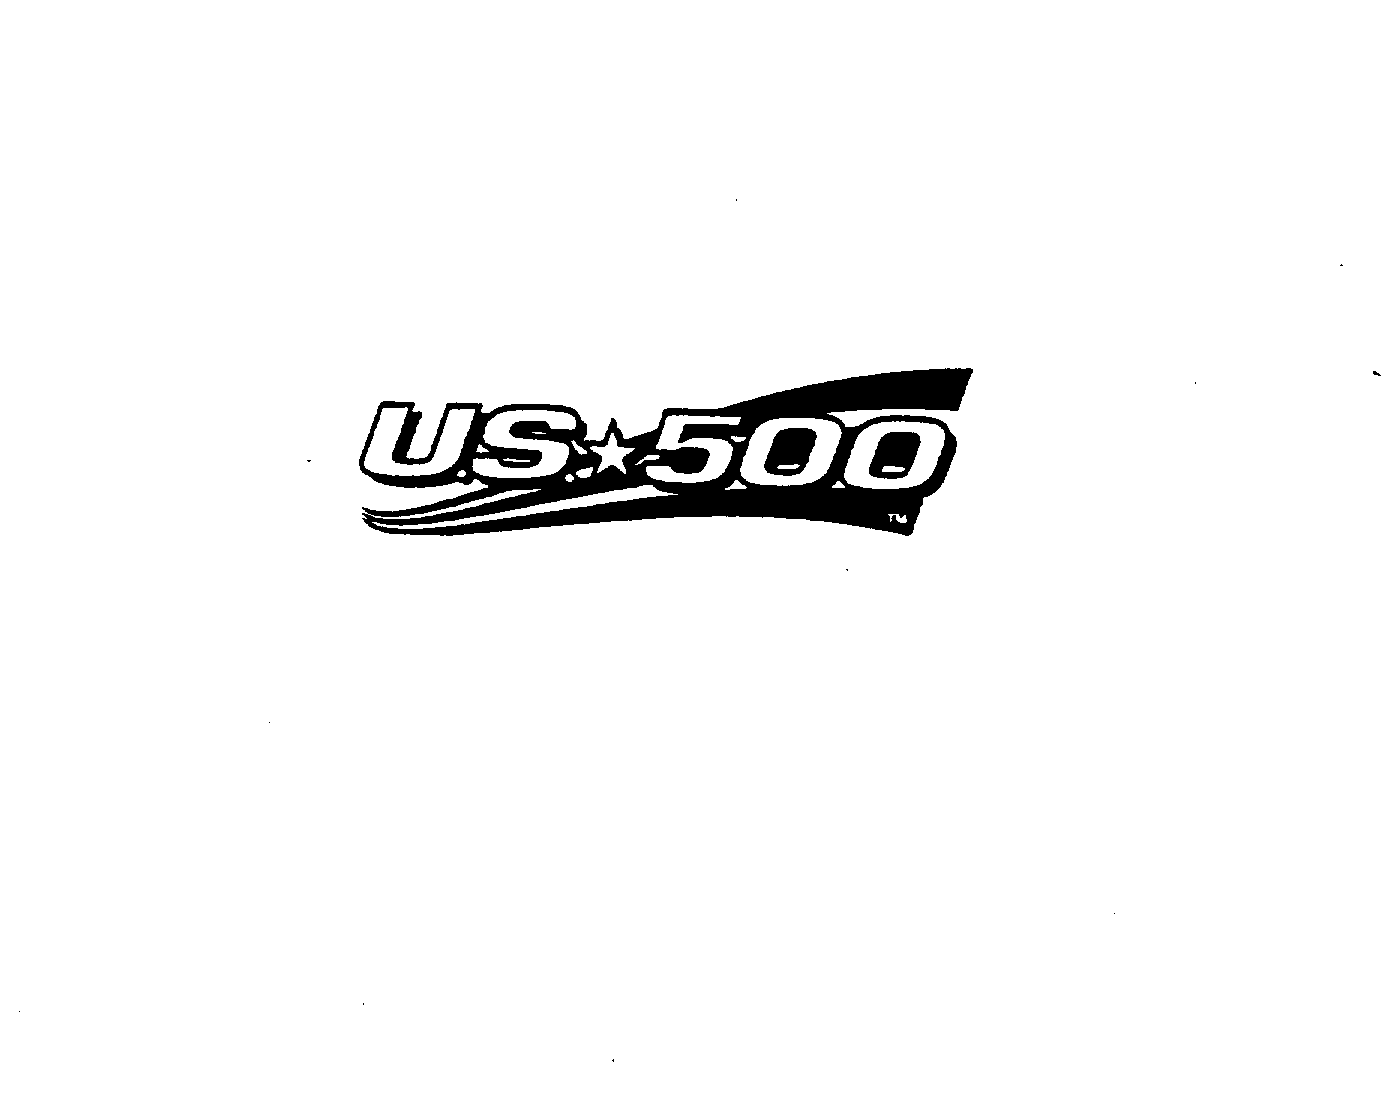  U.S. 500